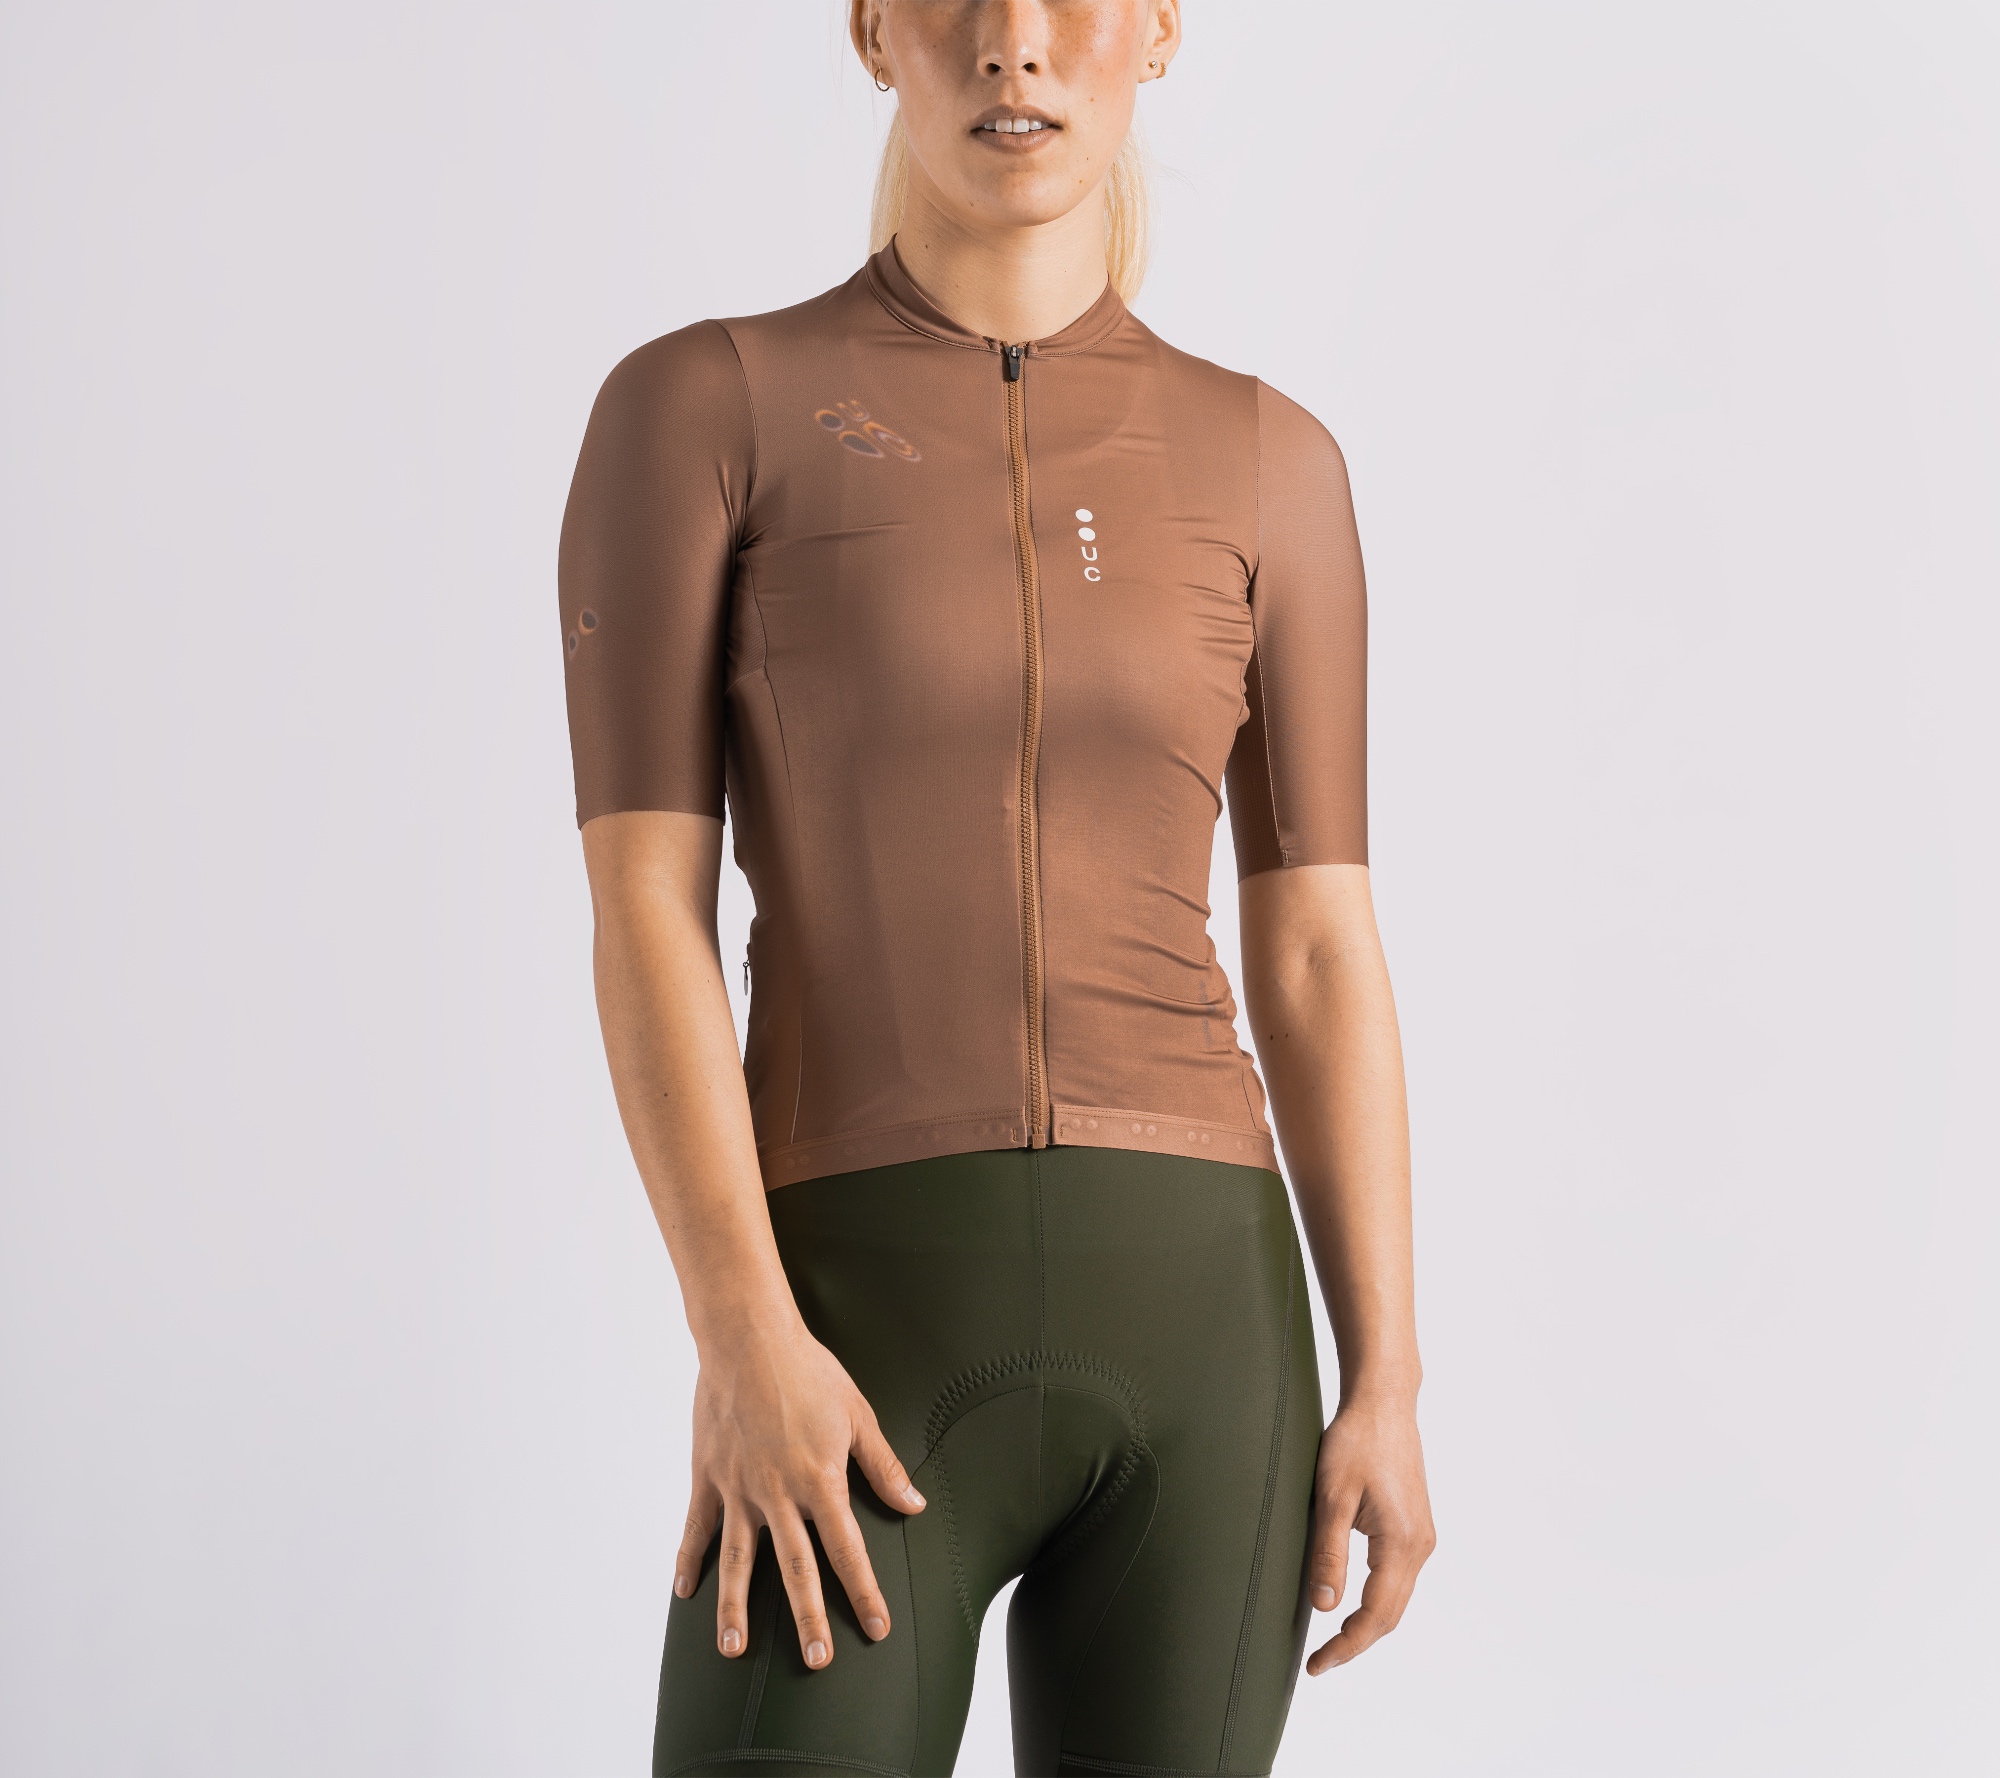 Spectrum Women's Short Sleeve Jersey Caramel Brown